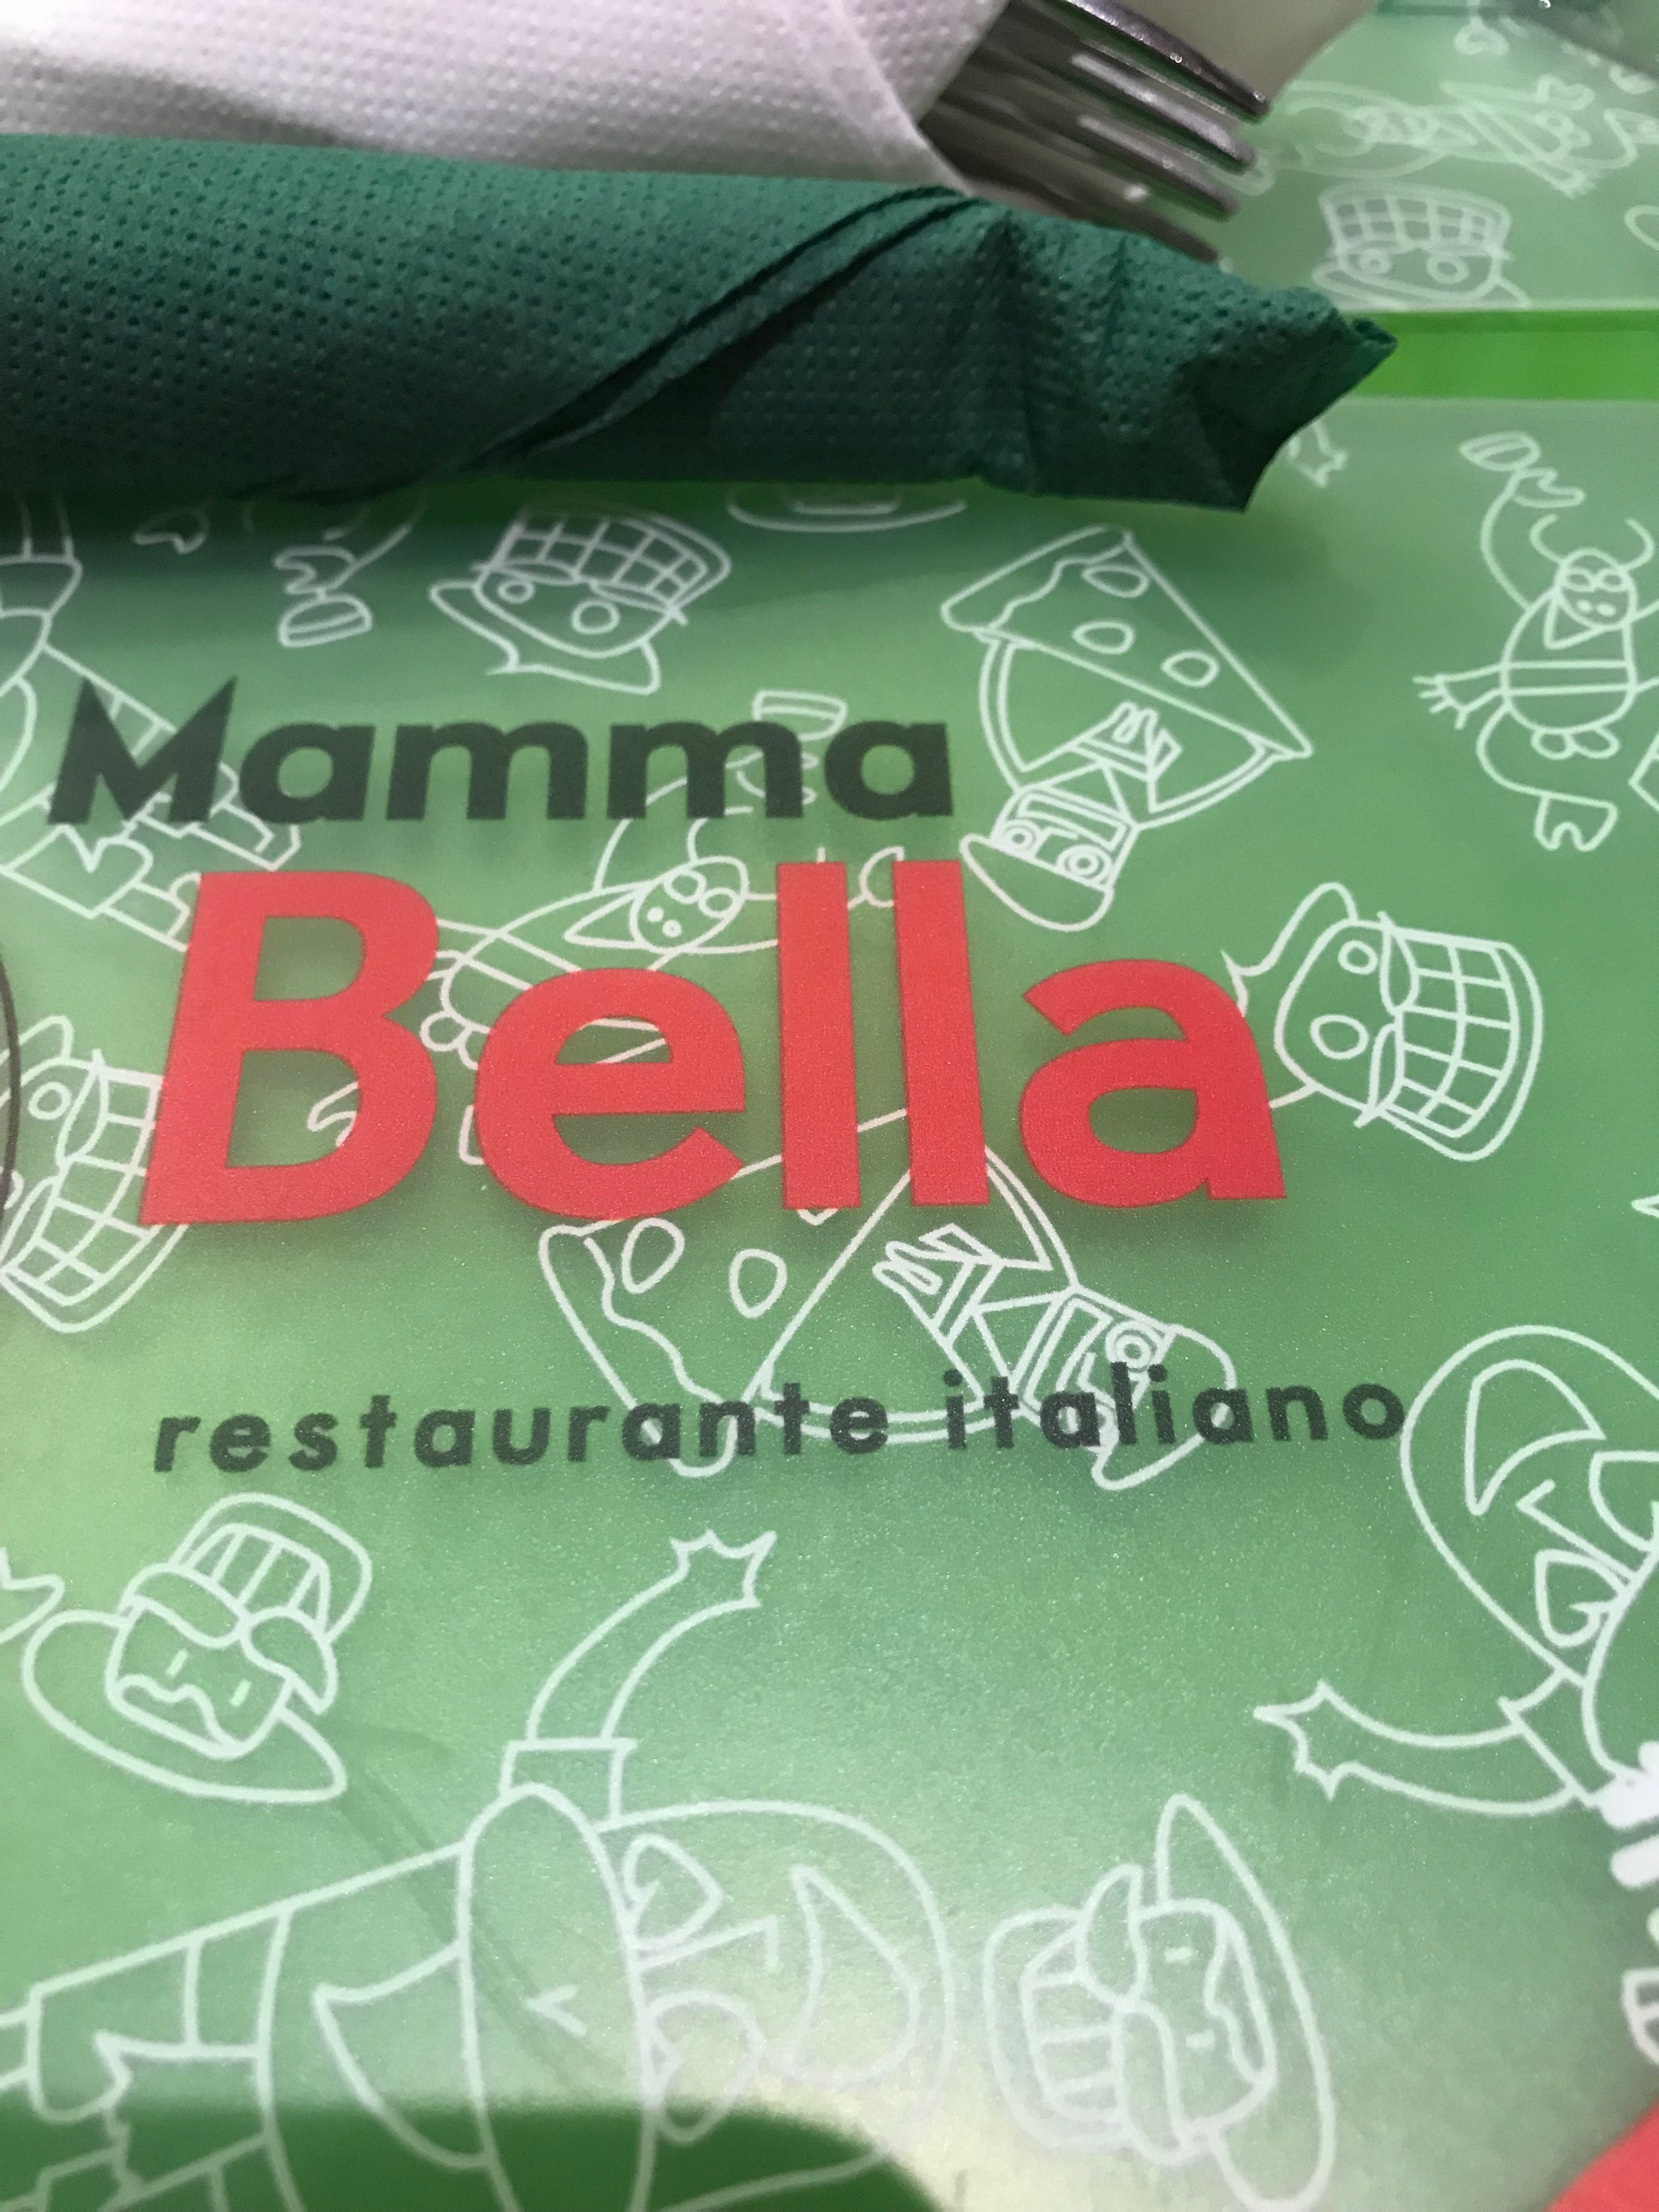 Mamma Bella Pizzeria